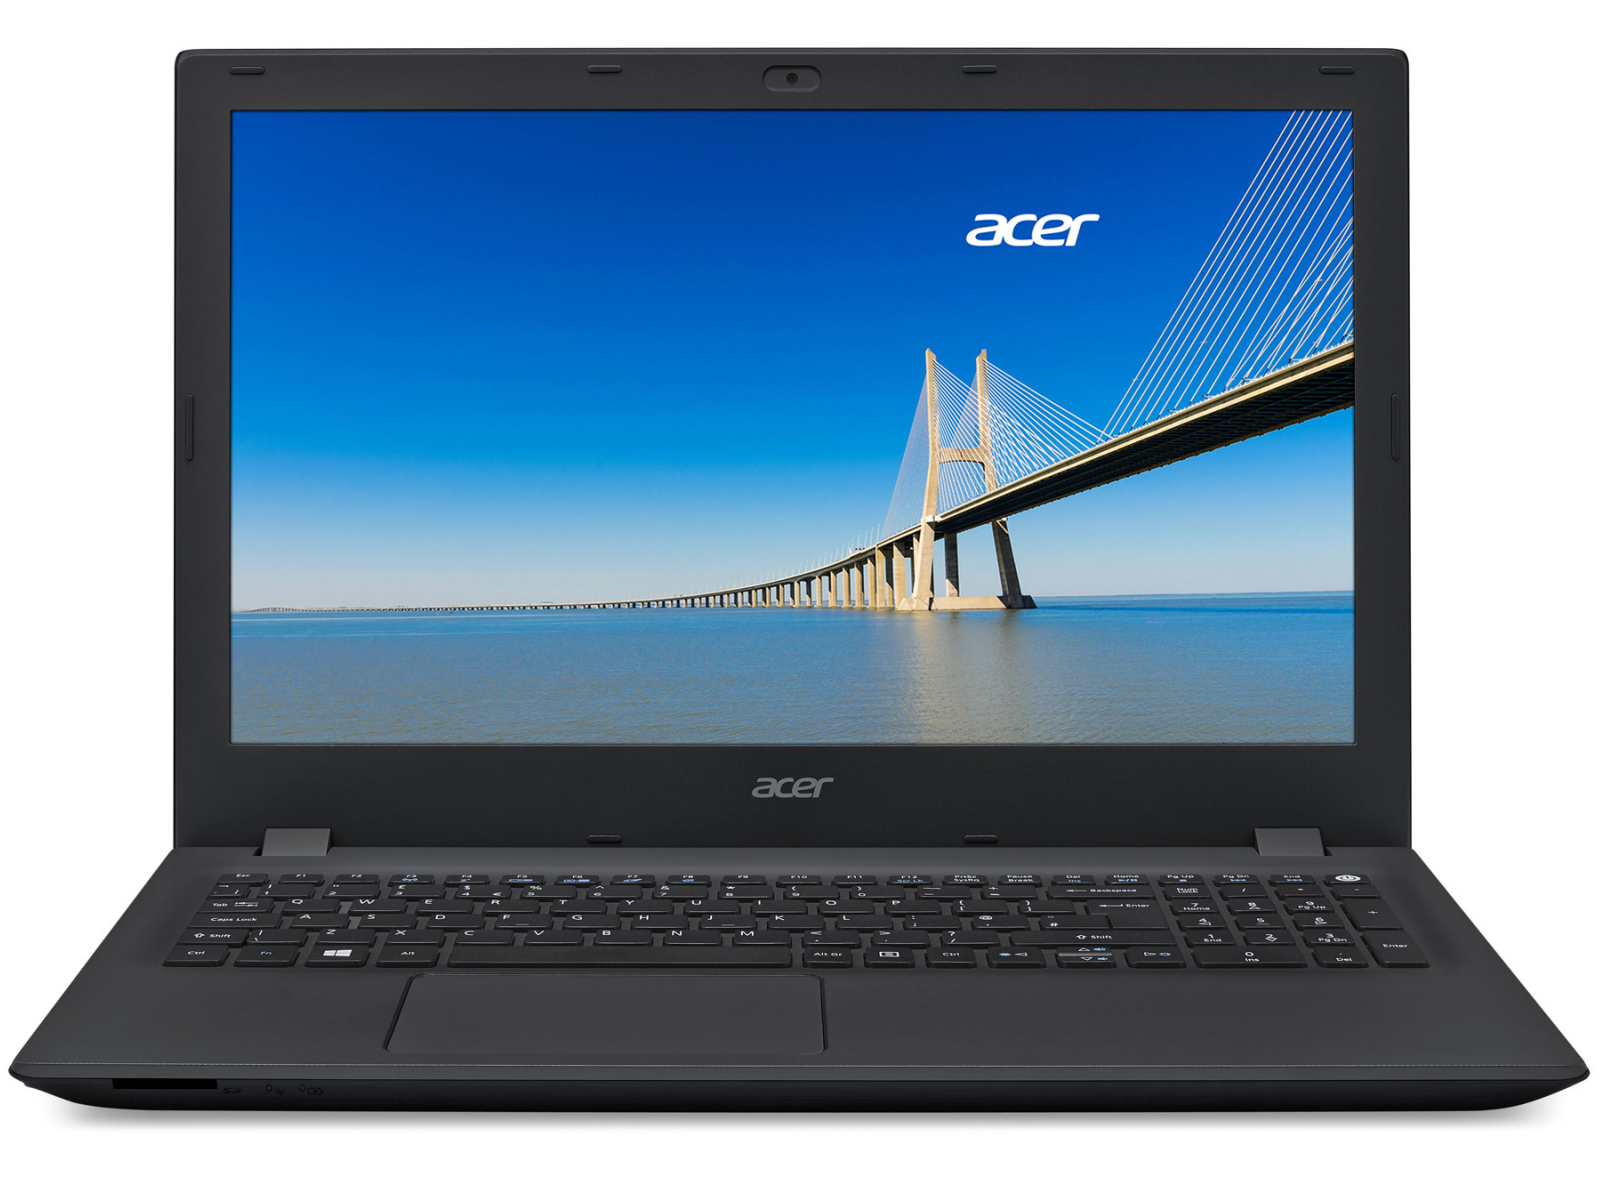 Acer Extensa 2520 DDR3 Notebook